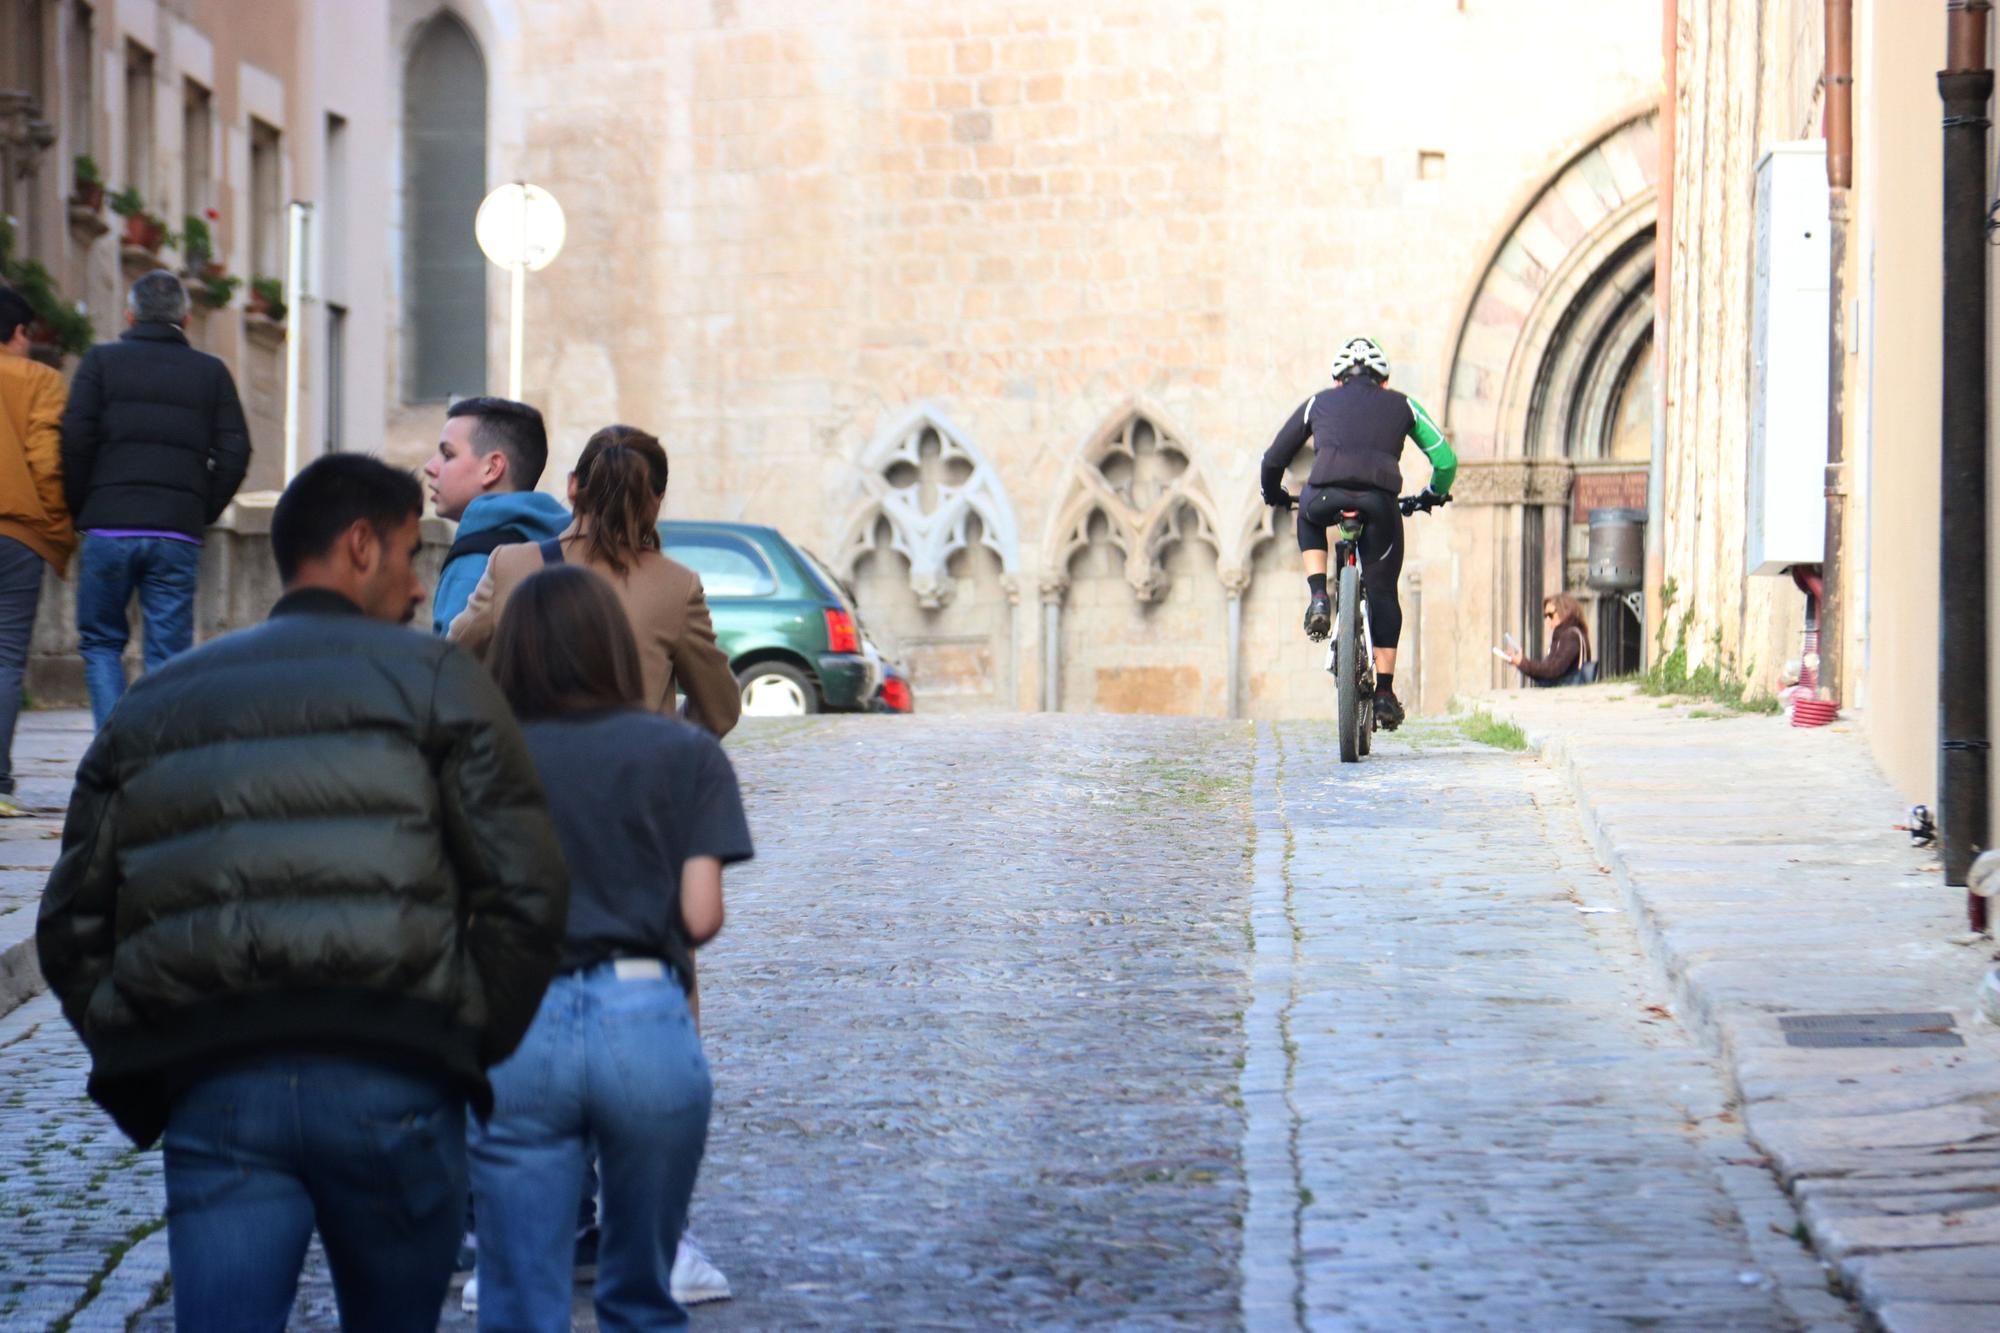 El turisme ciclista representa el 10% del turisme gironí